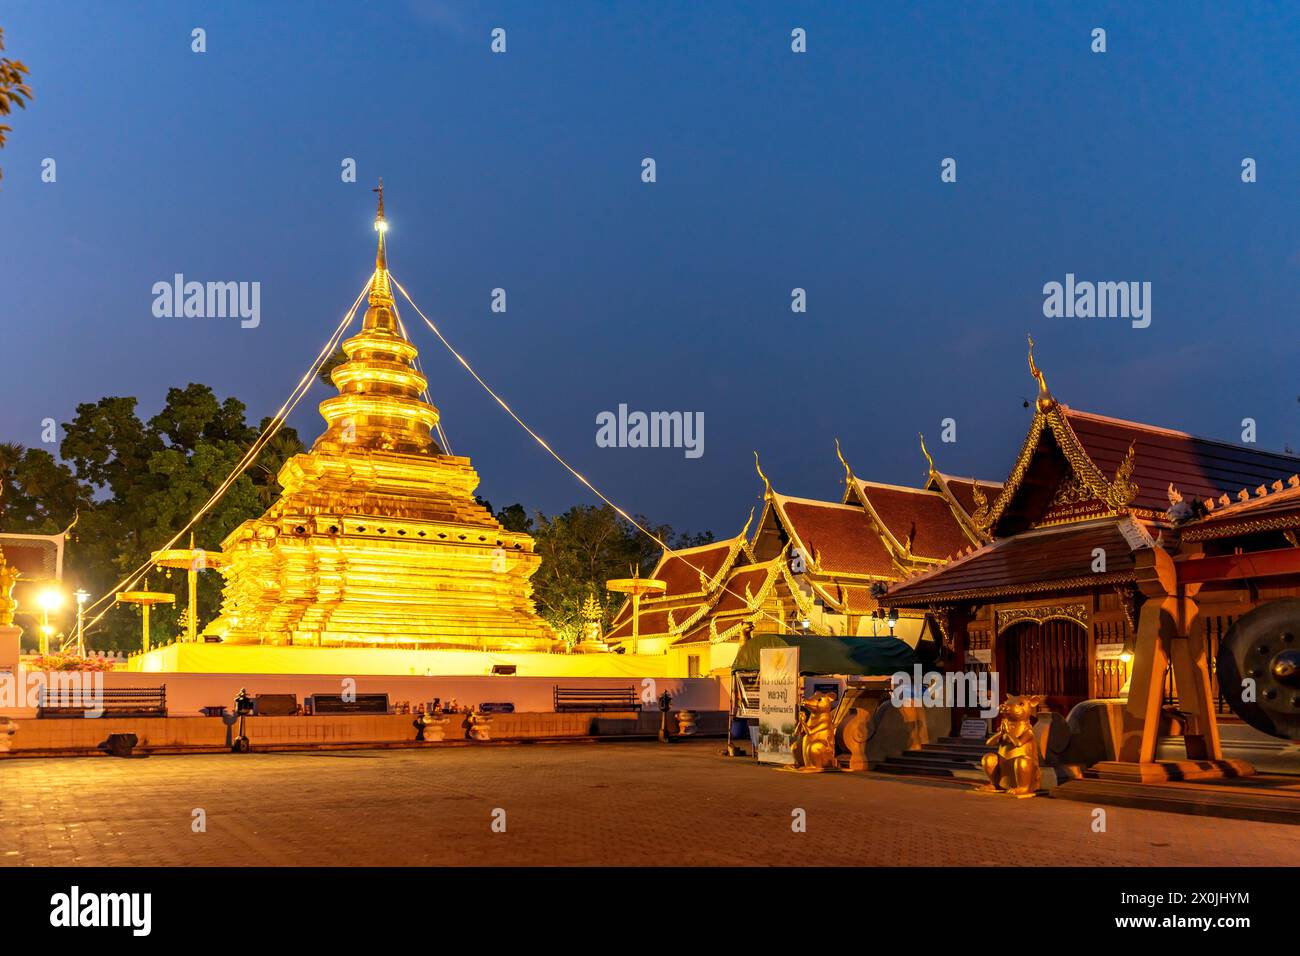 Le chedi doré du temple bouddhiste Wat Phra That si in Chom Thong au crépuscule, Thaïlande, Asie Banque D'Images